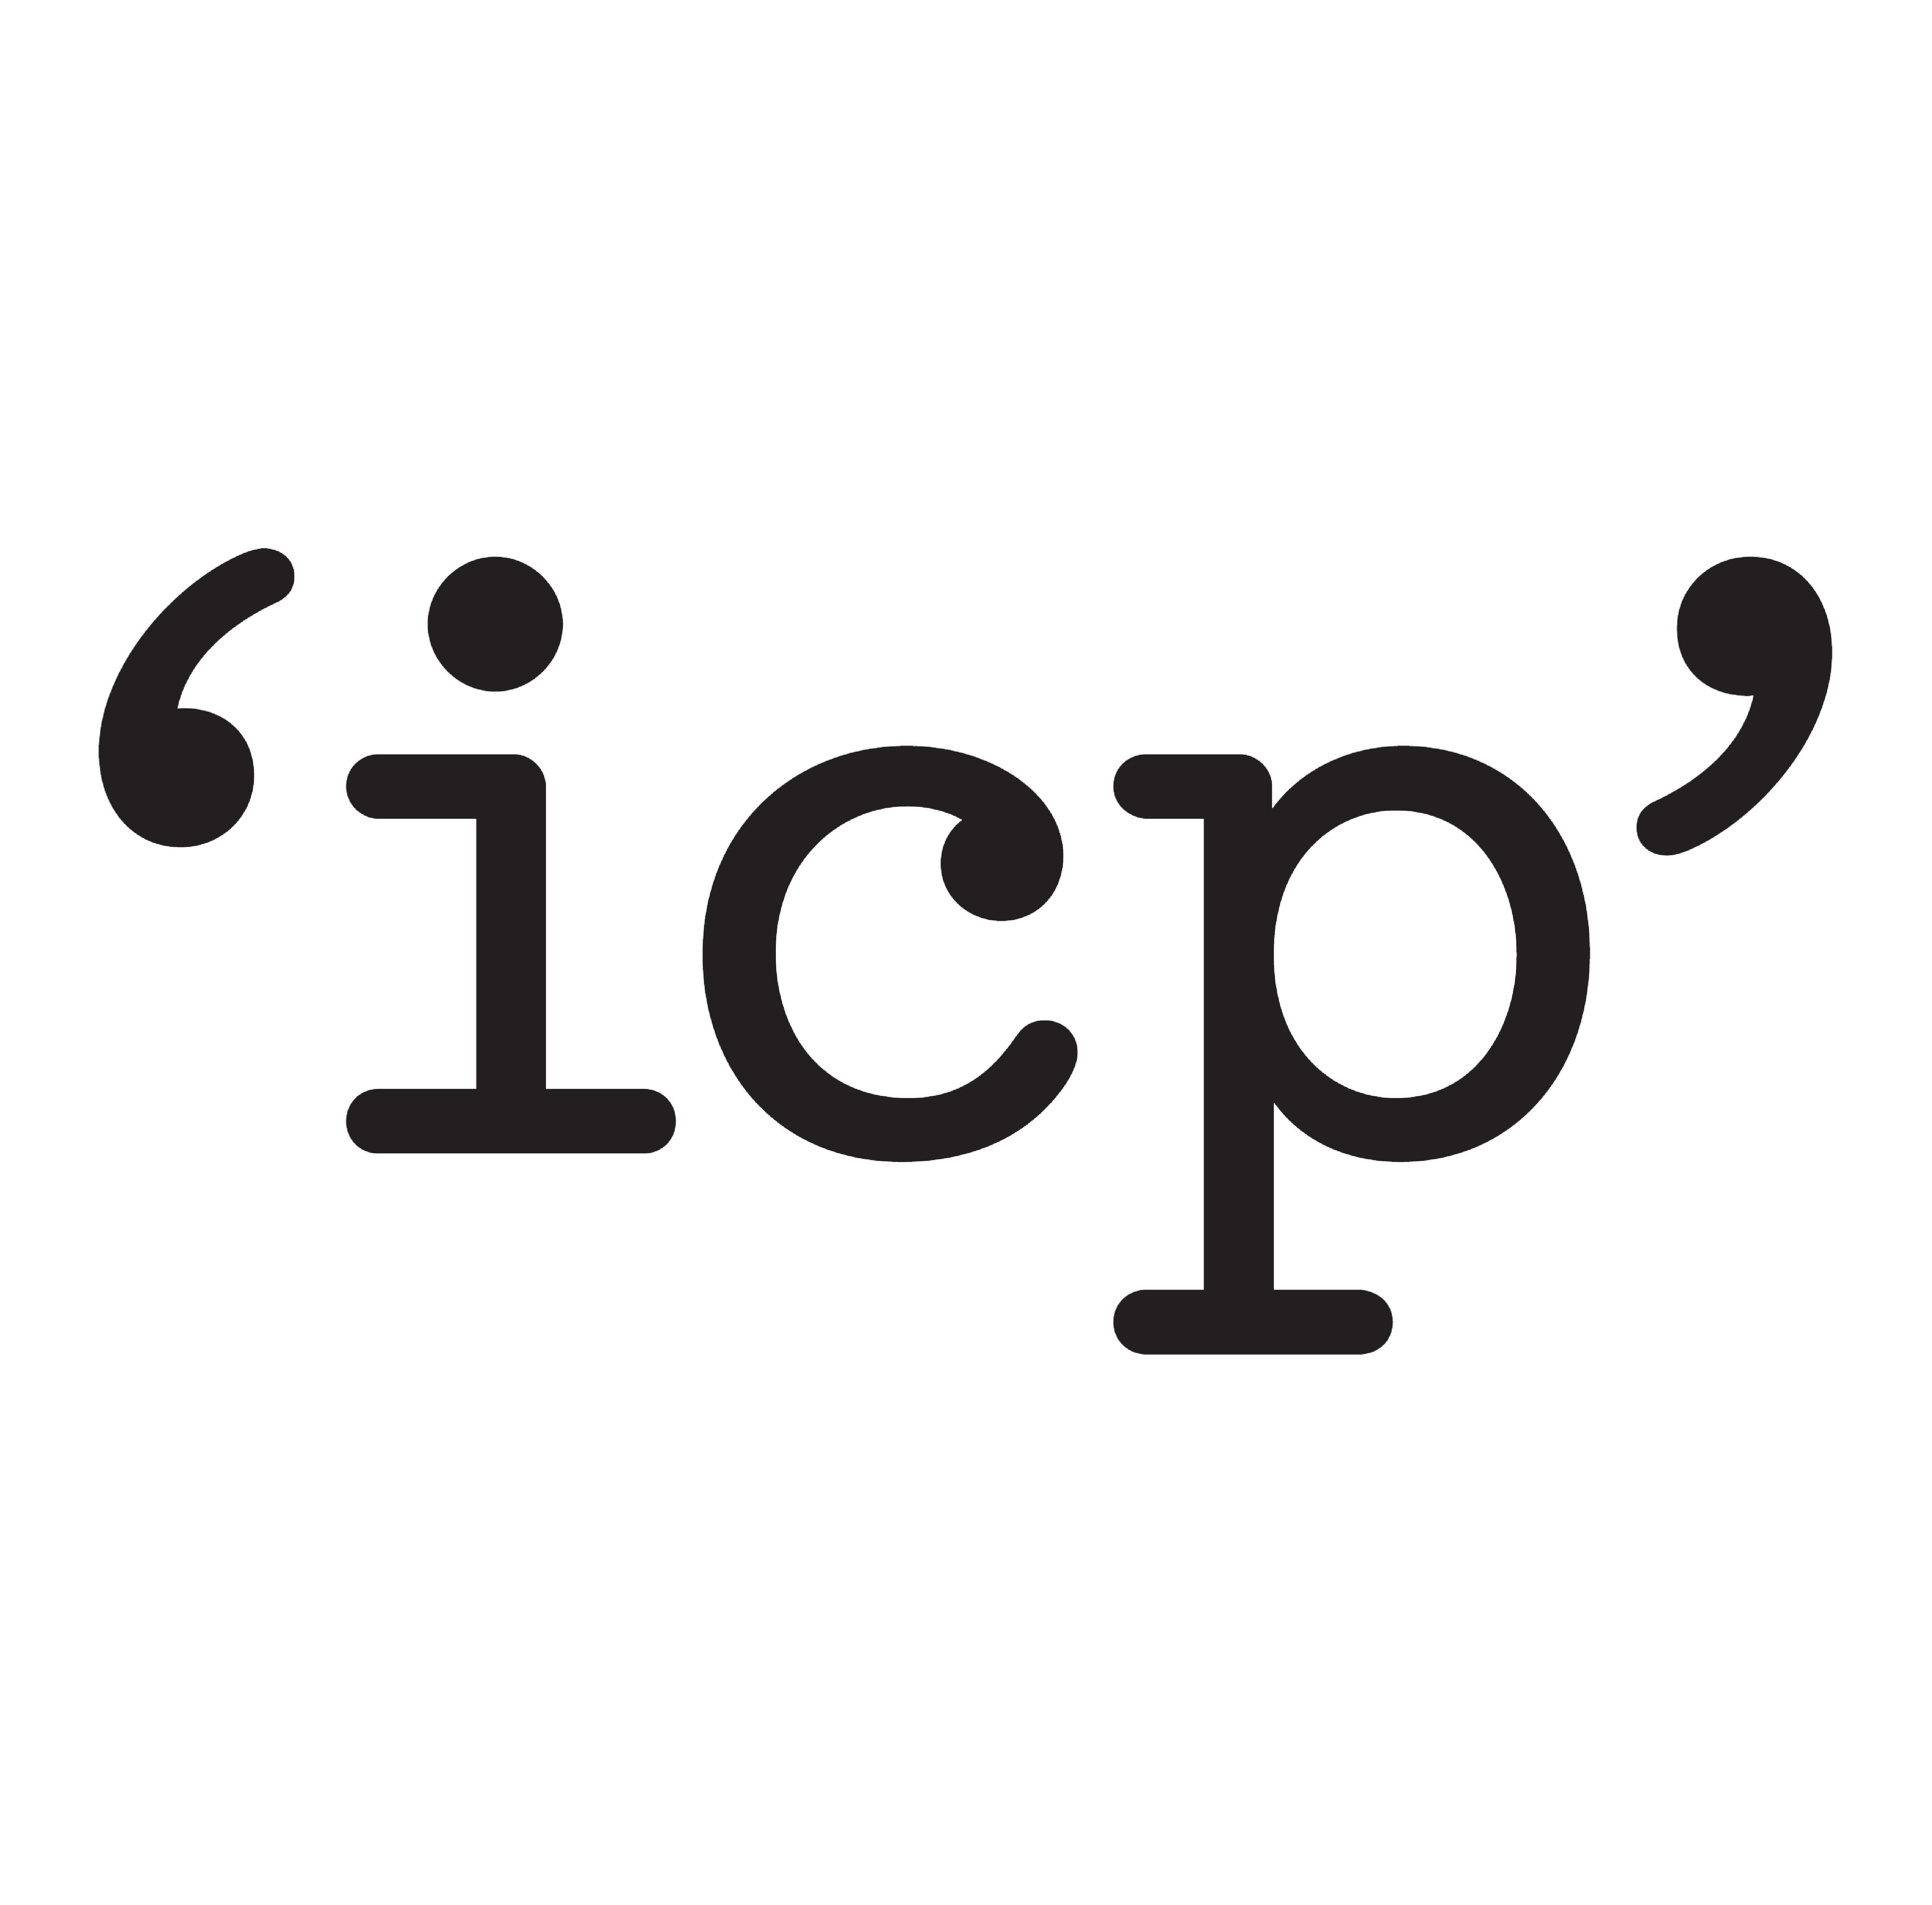 ICP image / logo